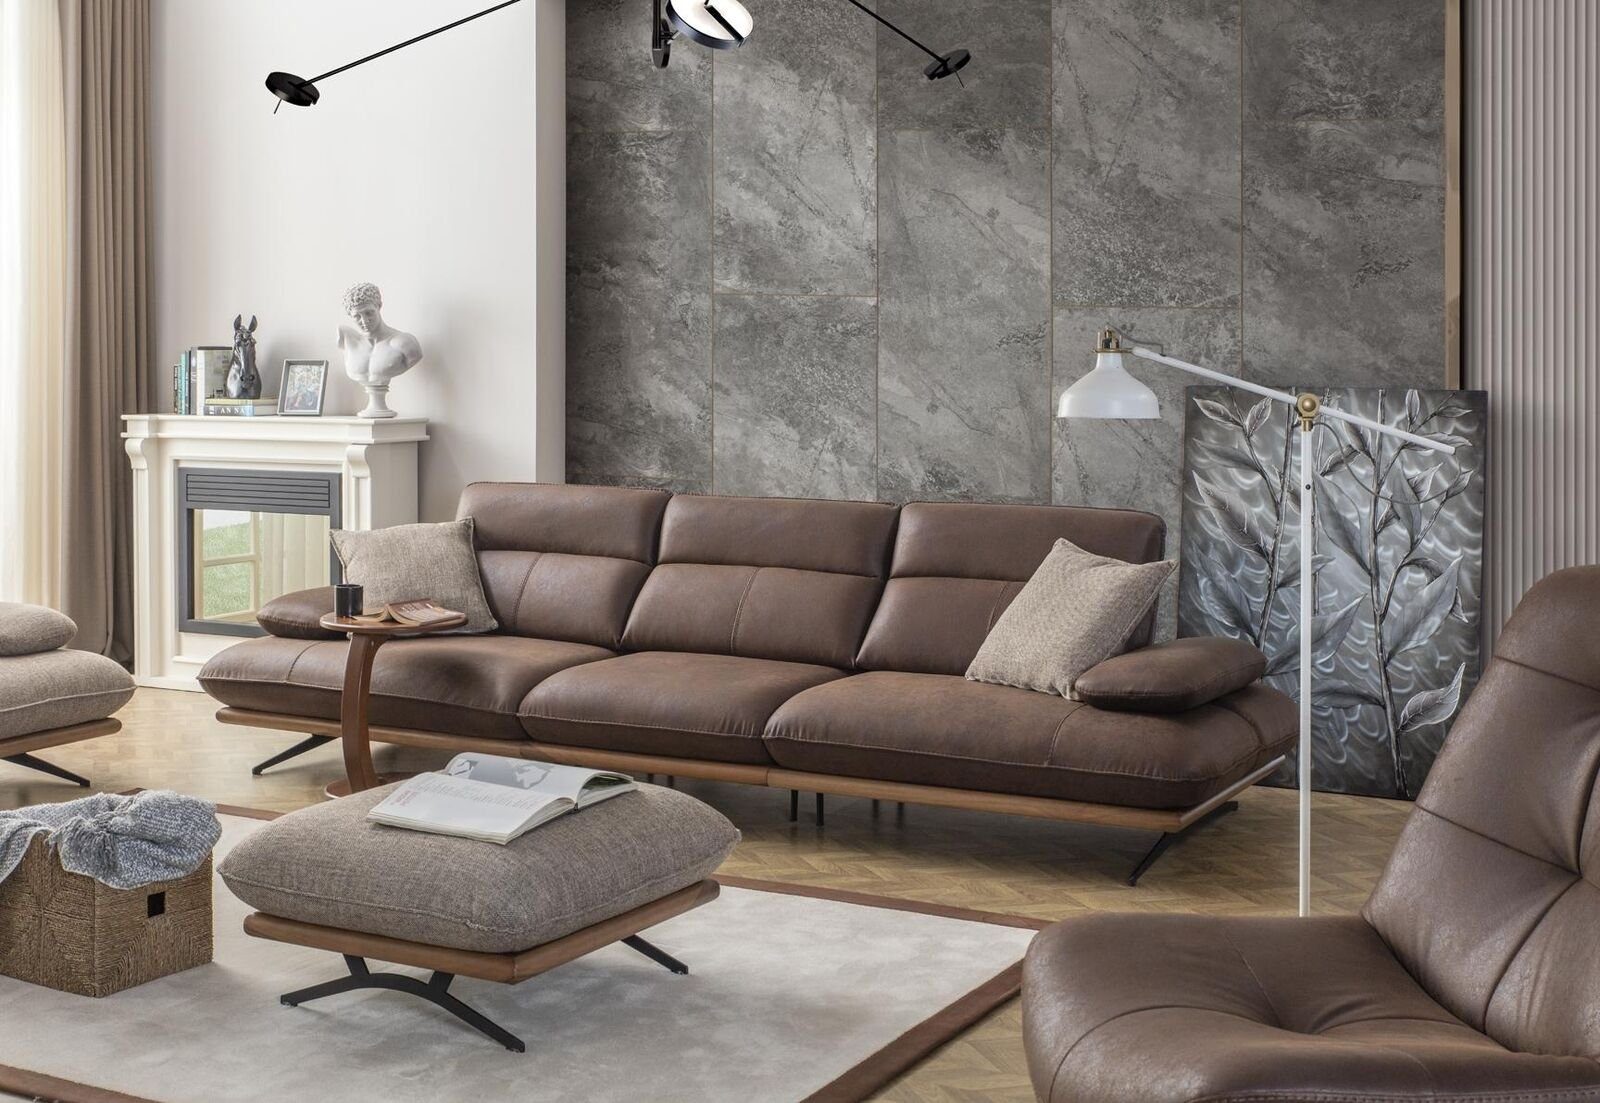 JVmoebel Sofa Viersitziges Sofa 4 Sitzer Sofas Braun Kunstleder Wohnzimmer Luxus, 1 Teile